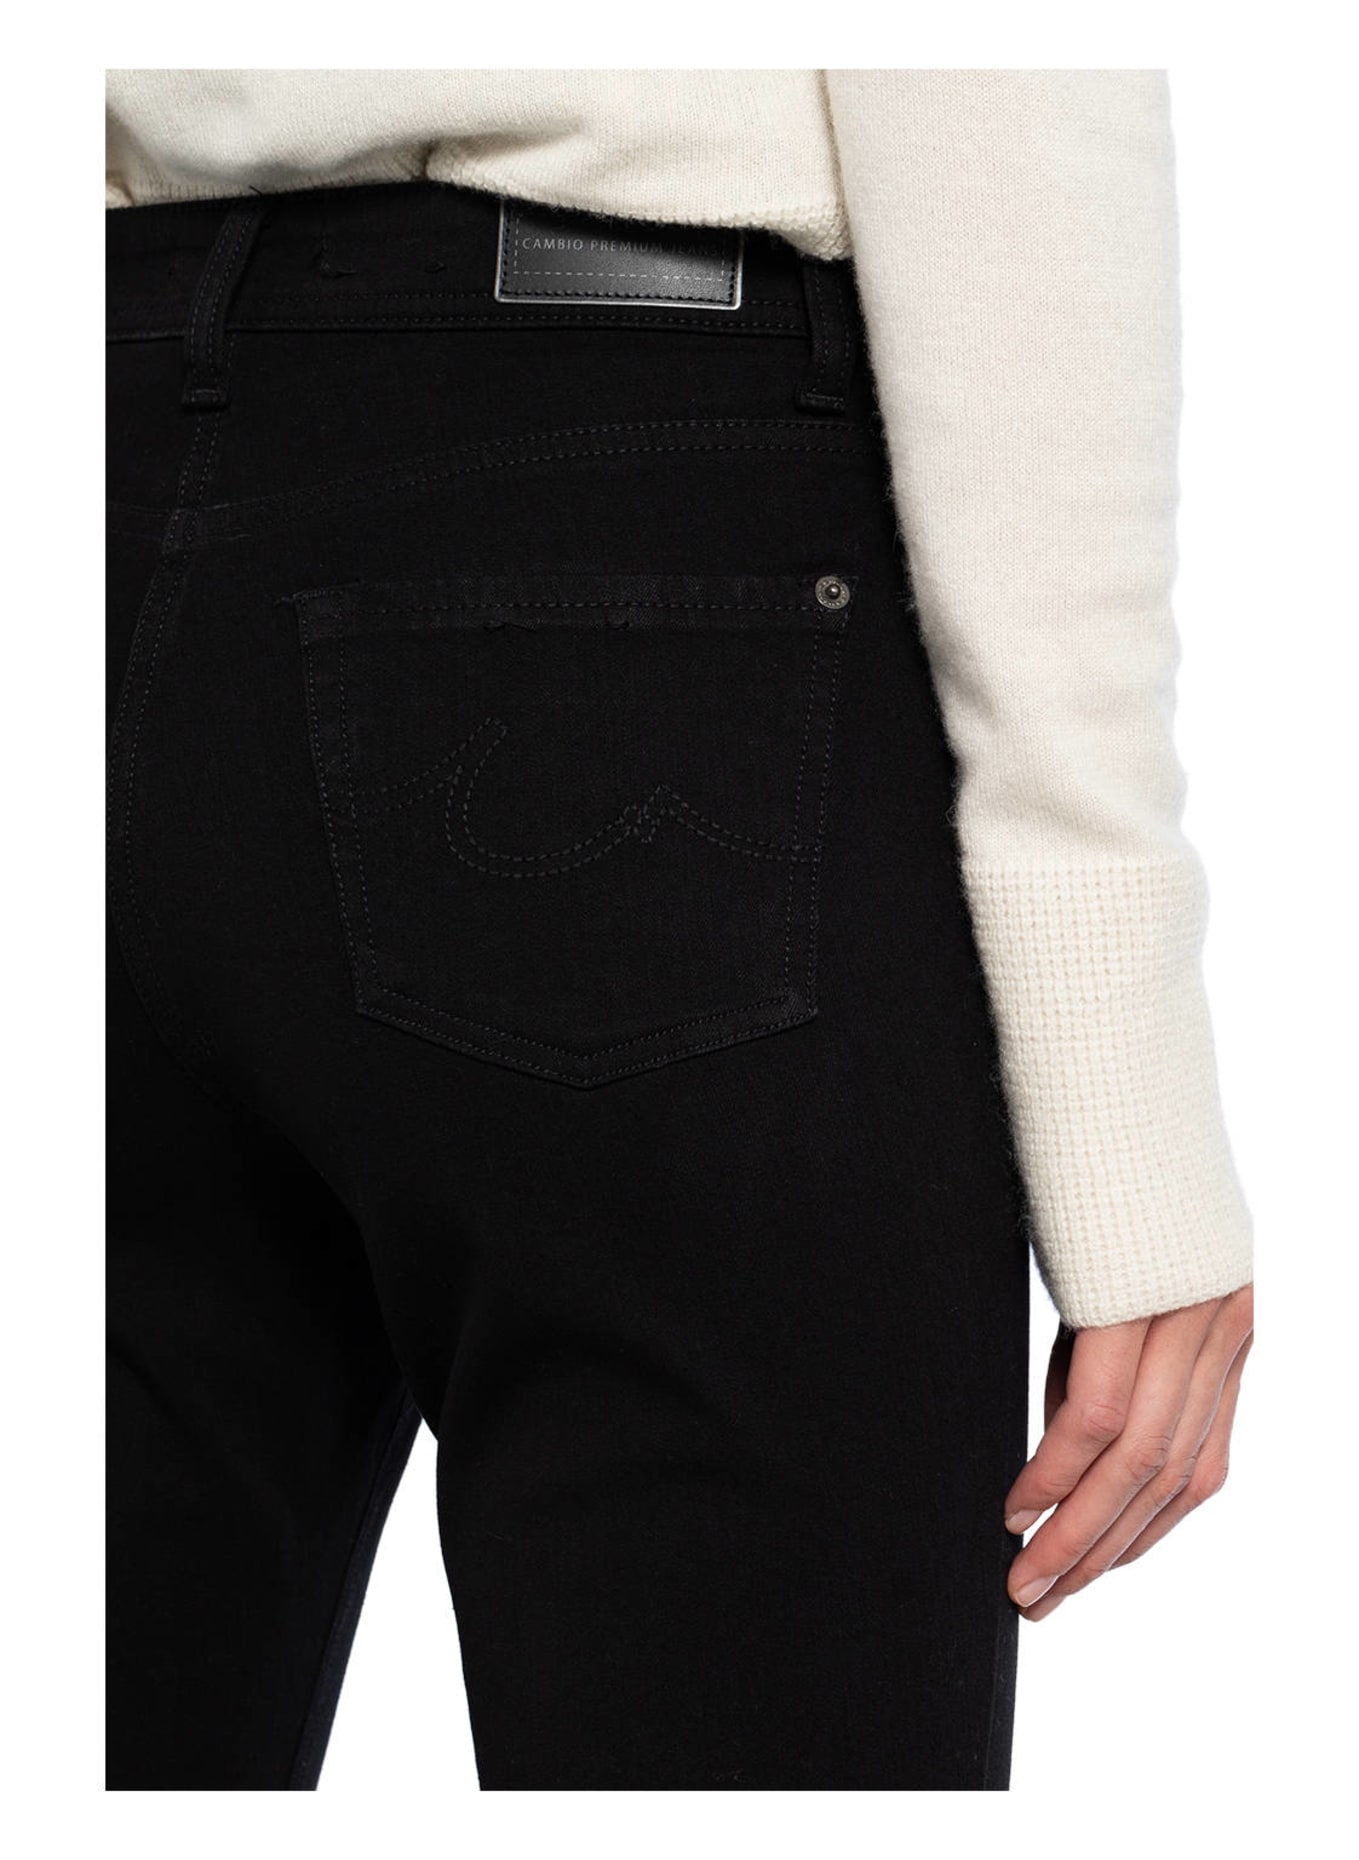 CAMBIO Skinny Jeans PARLA, Farbe: 5000 rinsed dark denim (Bild 5)